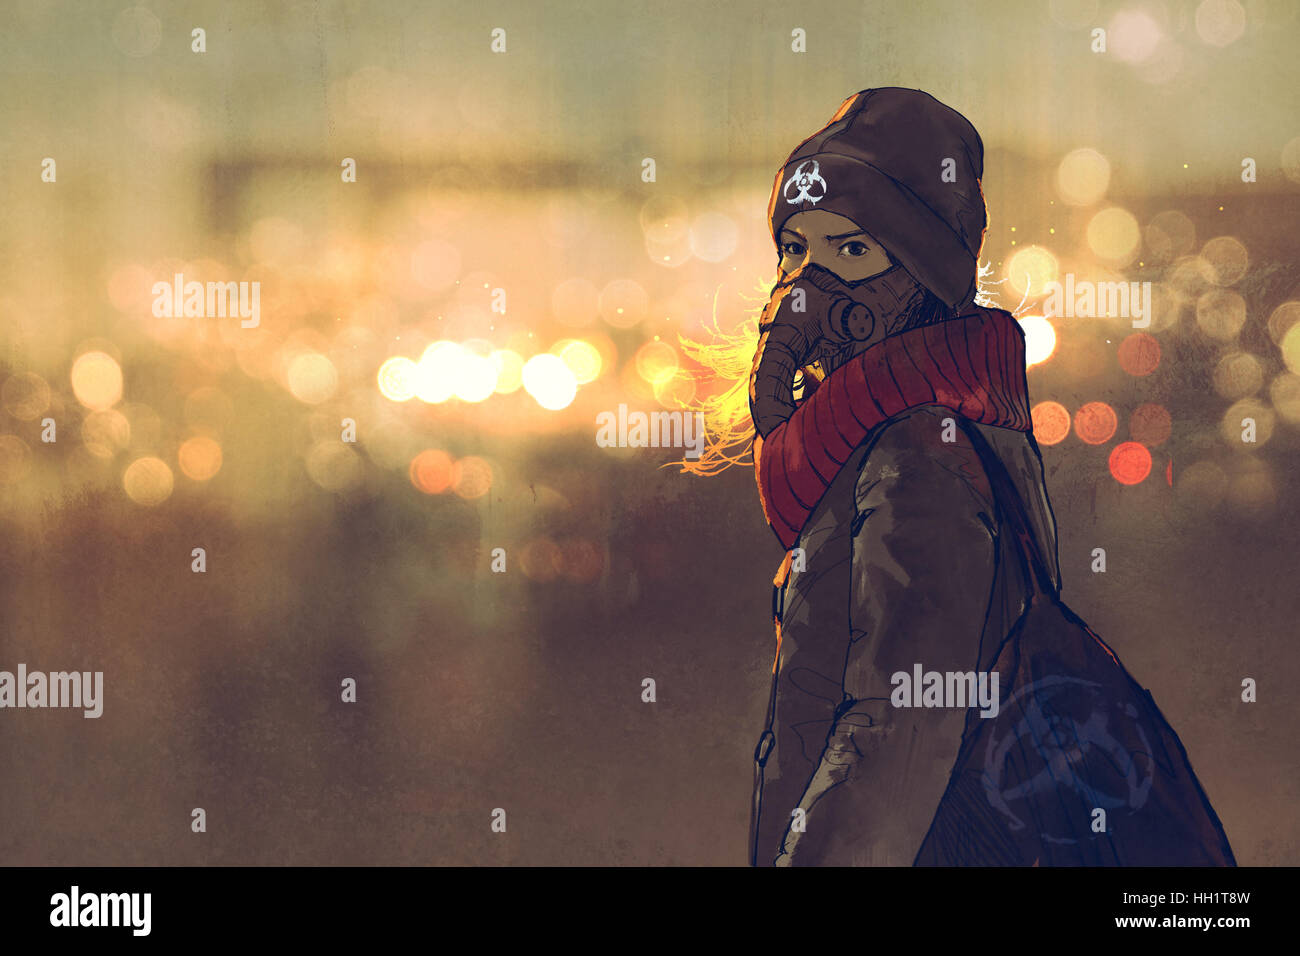 Outdoor Ritratto di giovane donna con maschera a gas in inverno con bokeh luce sullo sfondo, illustrazione pittura Foto Stock